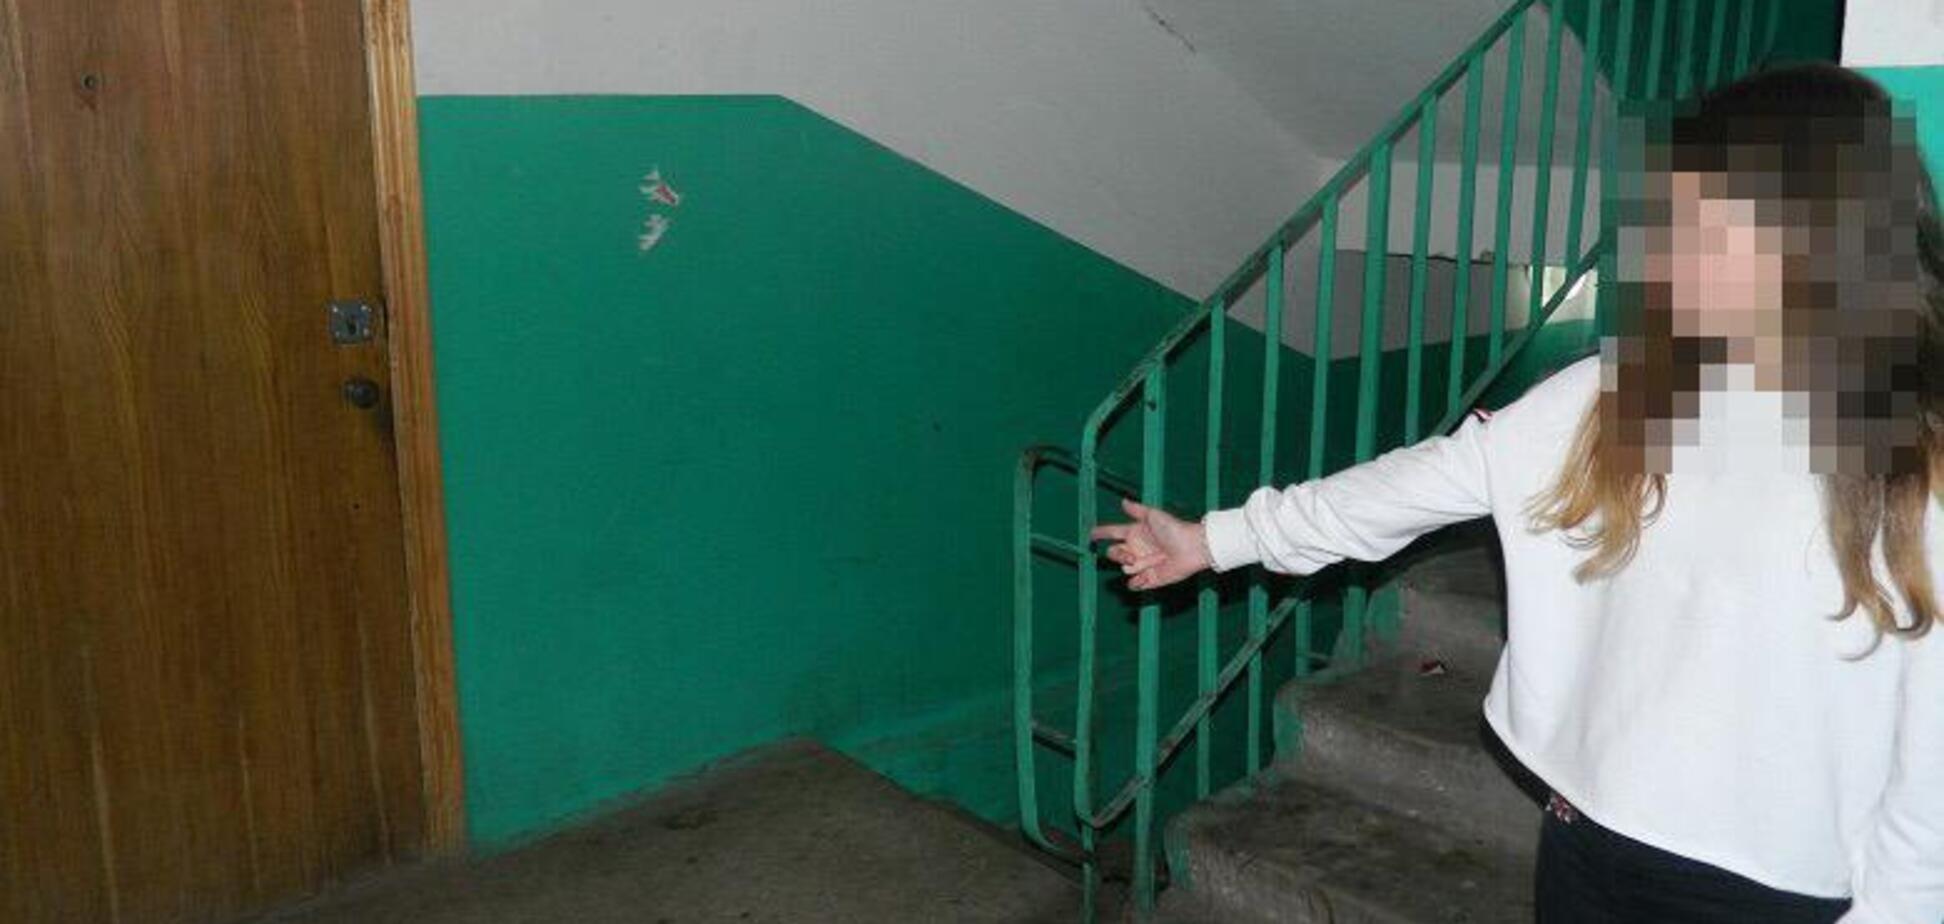 Чекав біля ліфта: в Києві чоловік напав на школярку в під'їзді